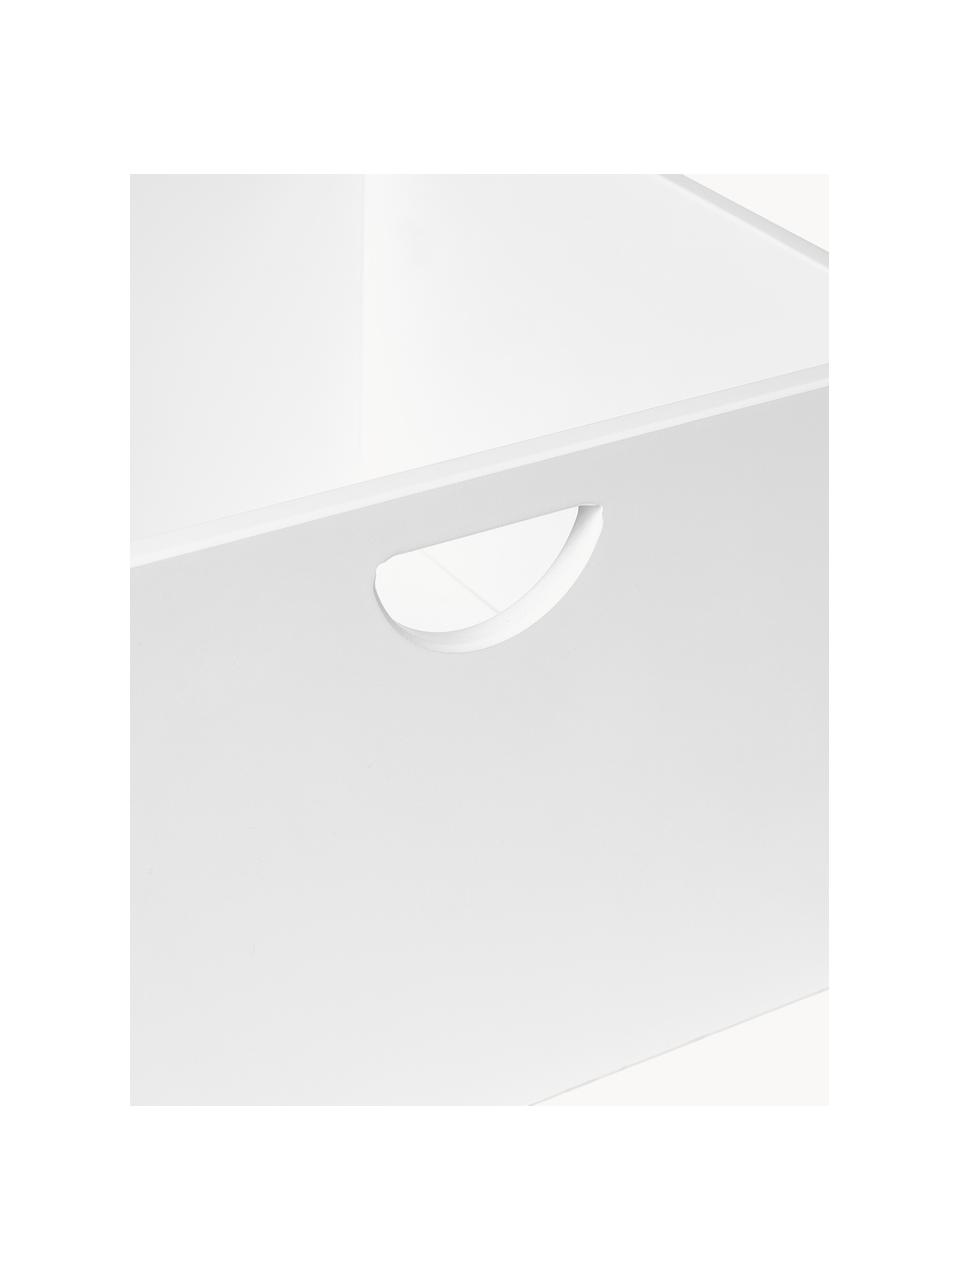 Schubladen Nunila, 2 Stück, Mitteldichte Holzfaserplatte (MDF), lackiert, Holz, weiß lackiert, B 36 x H 25 cm